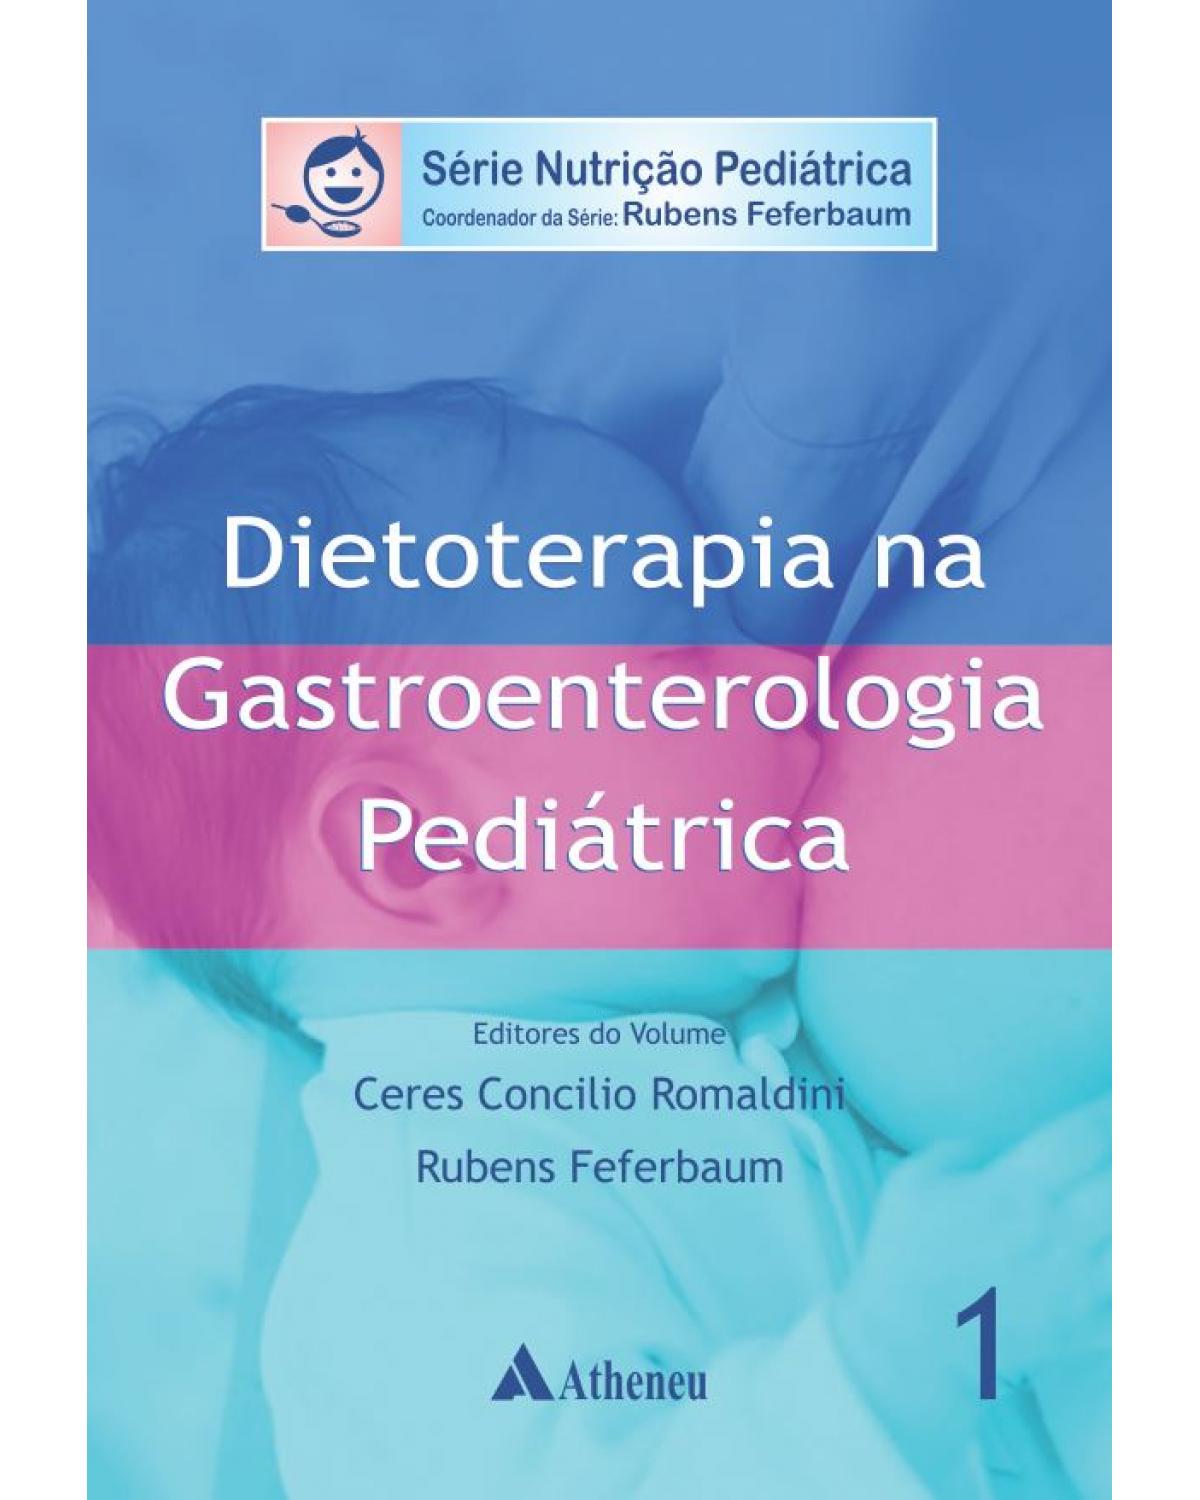 Dietoterapia na gastroenterologia pediátrica - Volume 1:  - 1ª Edição | 2015